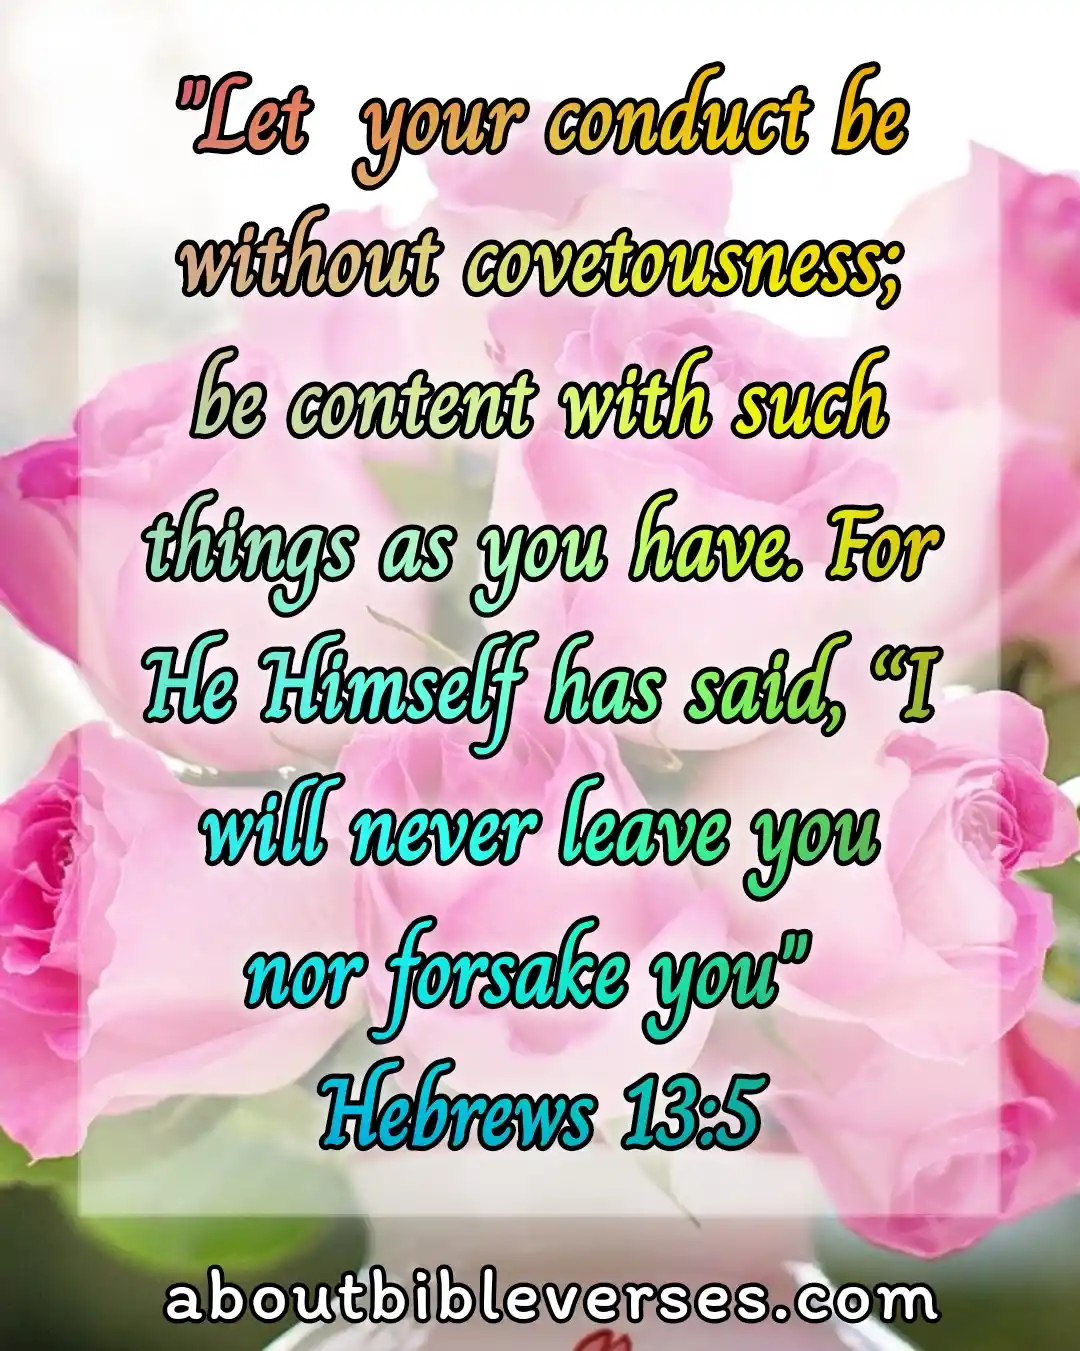 today bible verse (Hebrews 13:5)